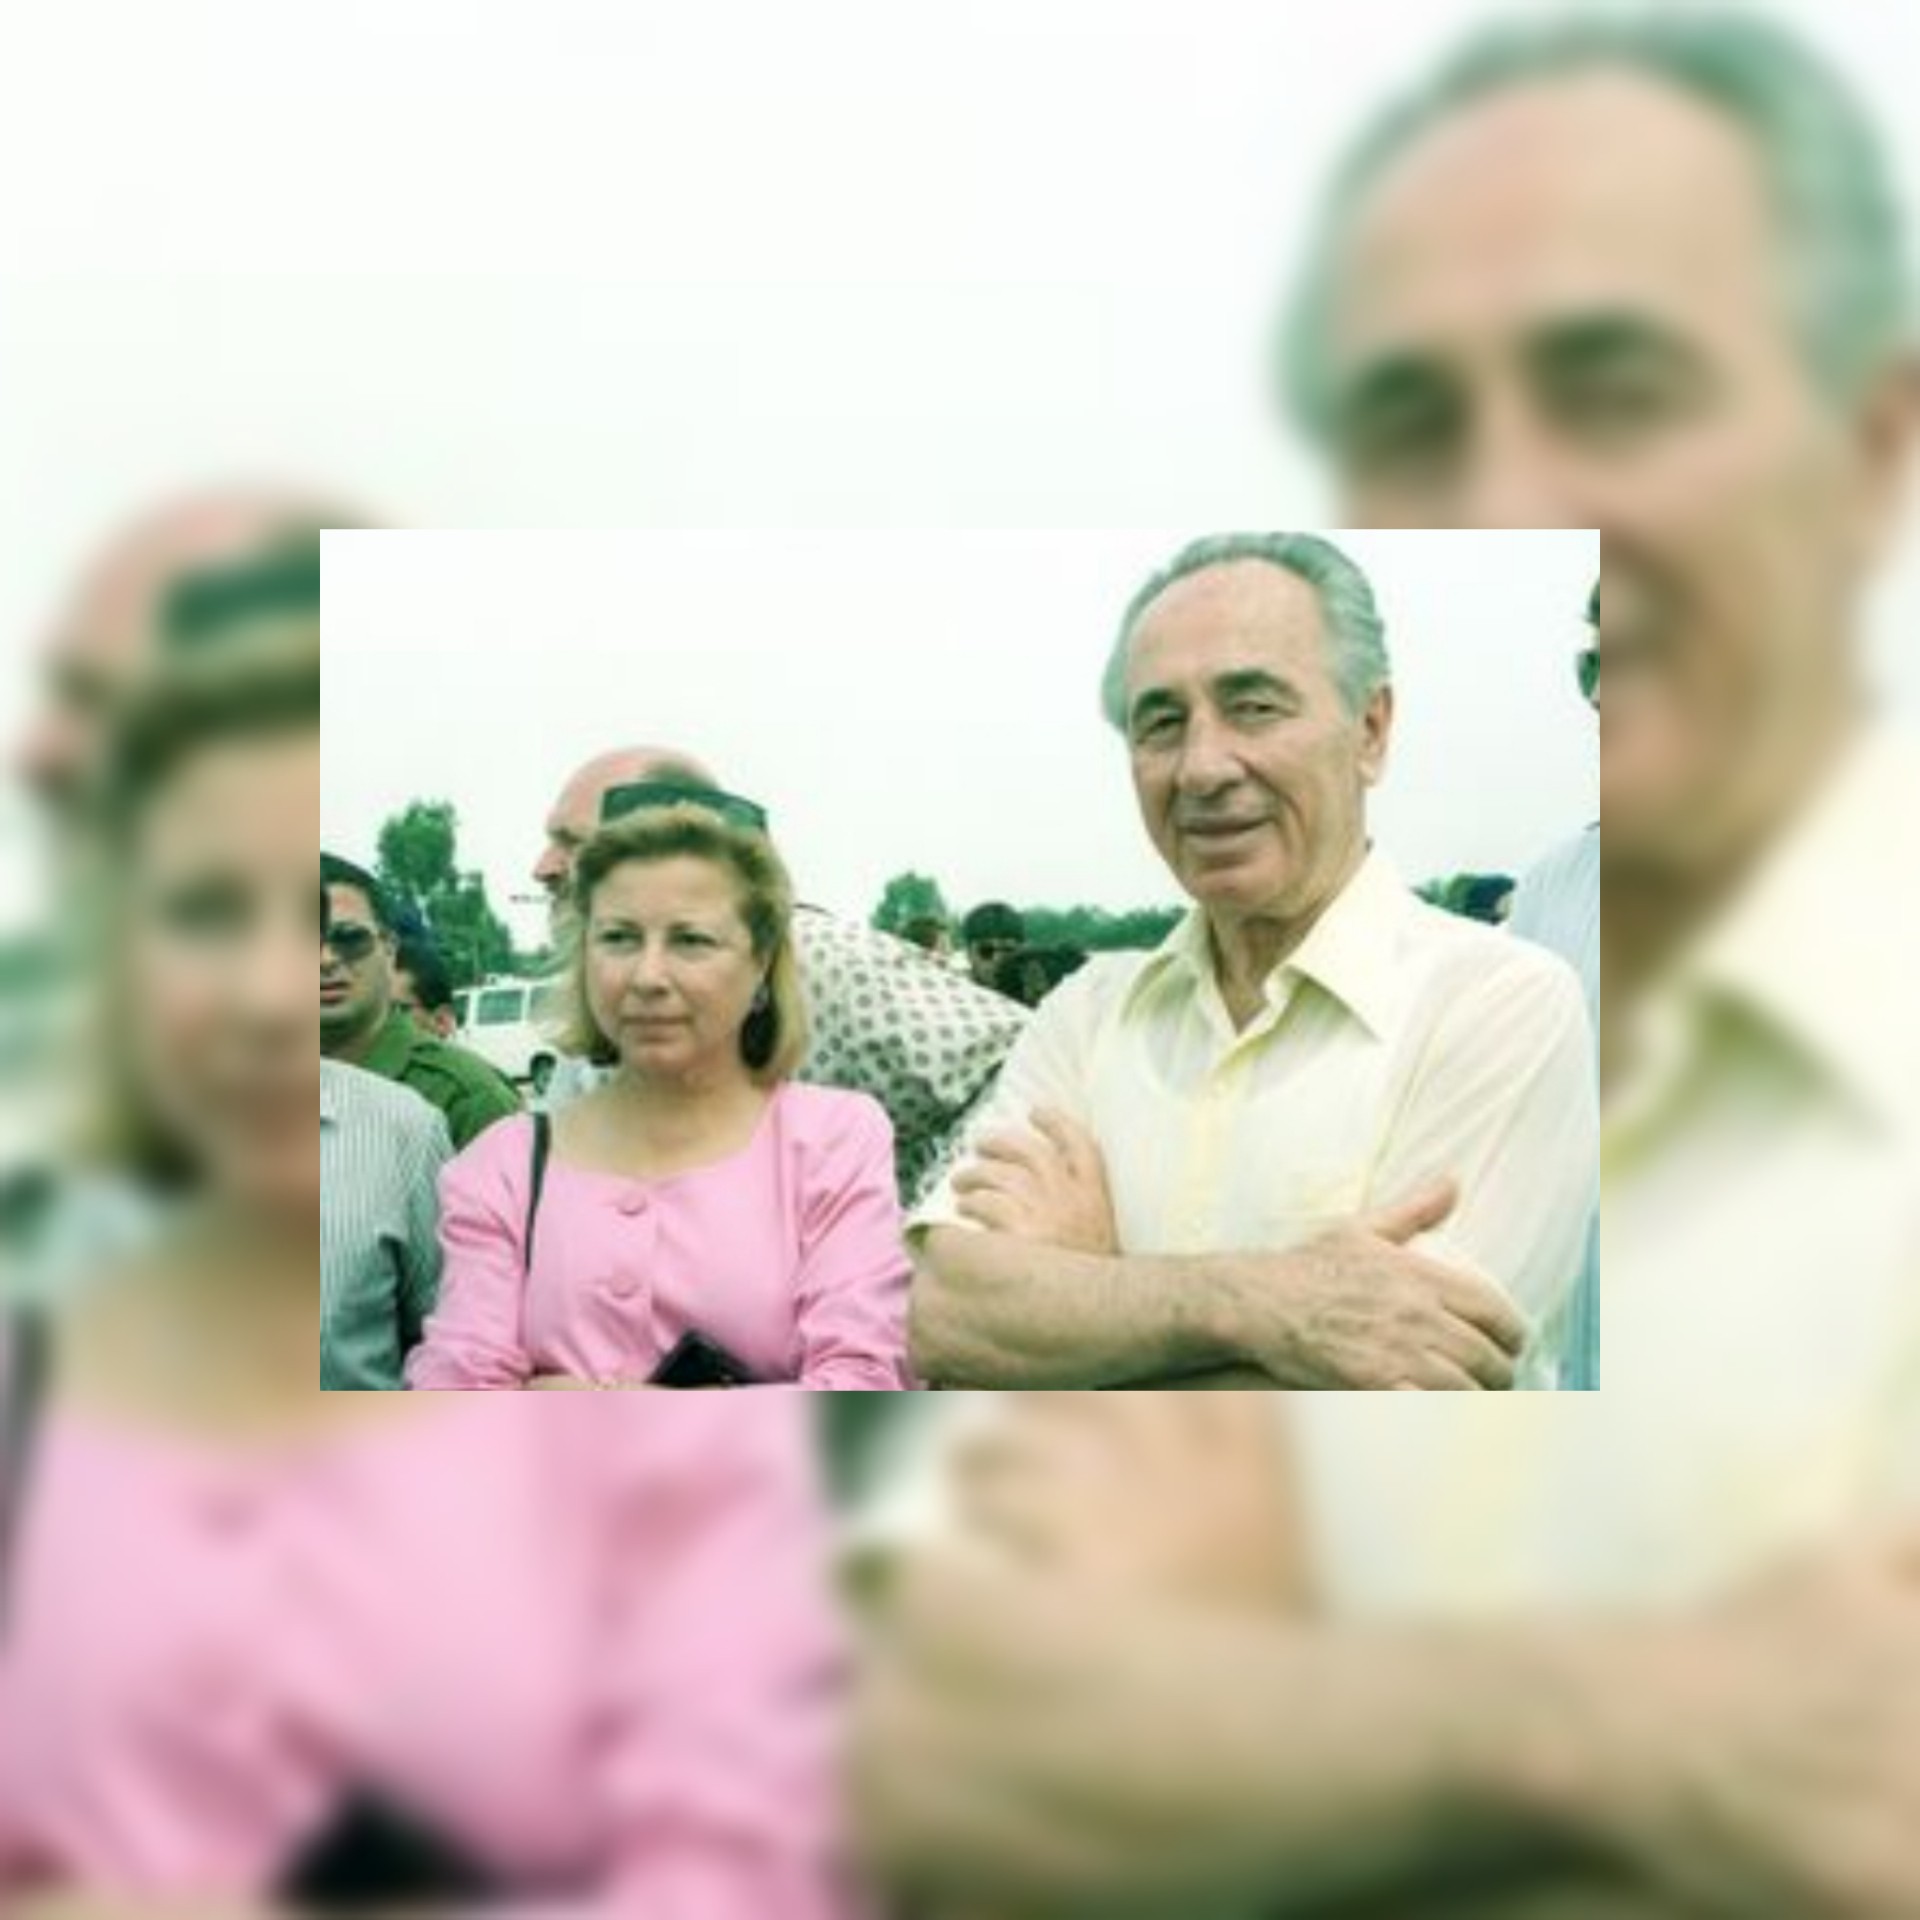 اعلام عبري : عضو كنيست سابق تتهم  رئيس الوزراء السابق شمعون بيريز بالاعتداء عليها جنسيا في الثمانينيات